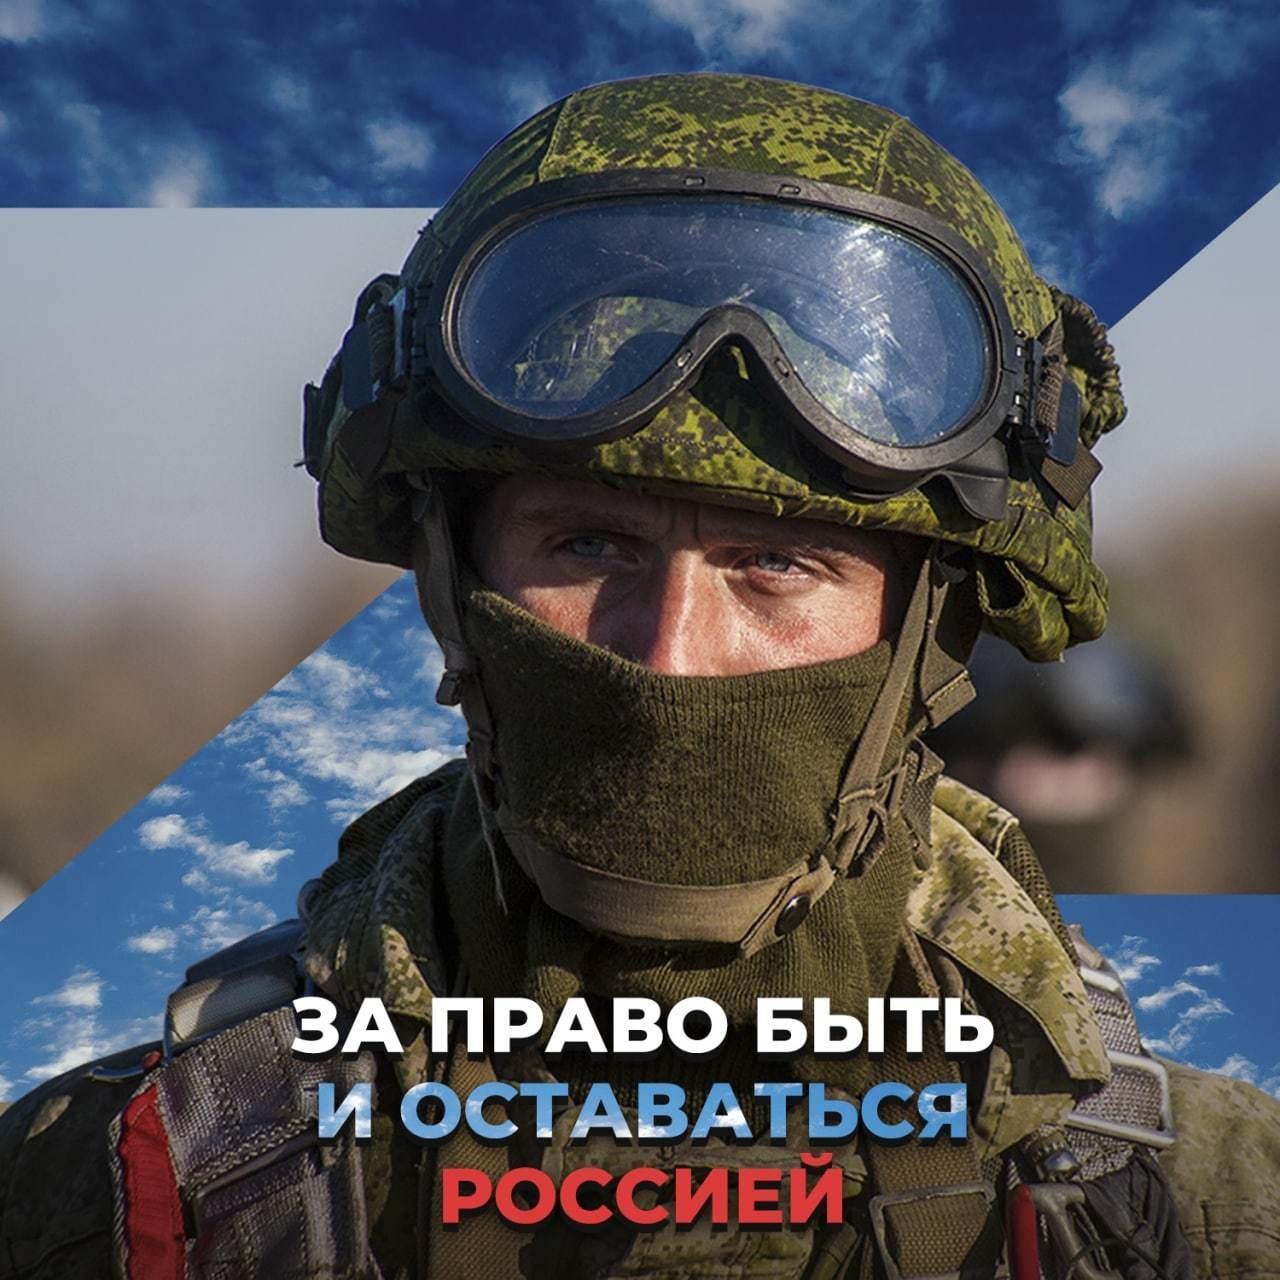 Фото Шесть месяцев с начала СВУ: новые патриотичные открытки о спецоперации на Украине 12